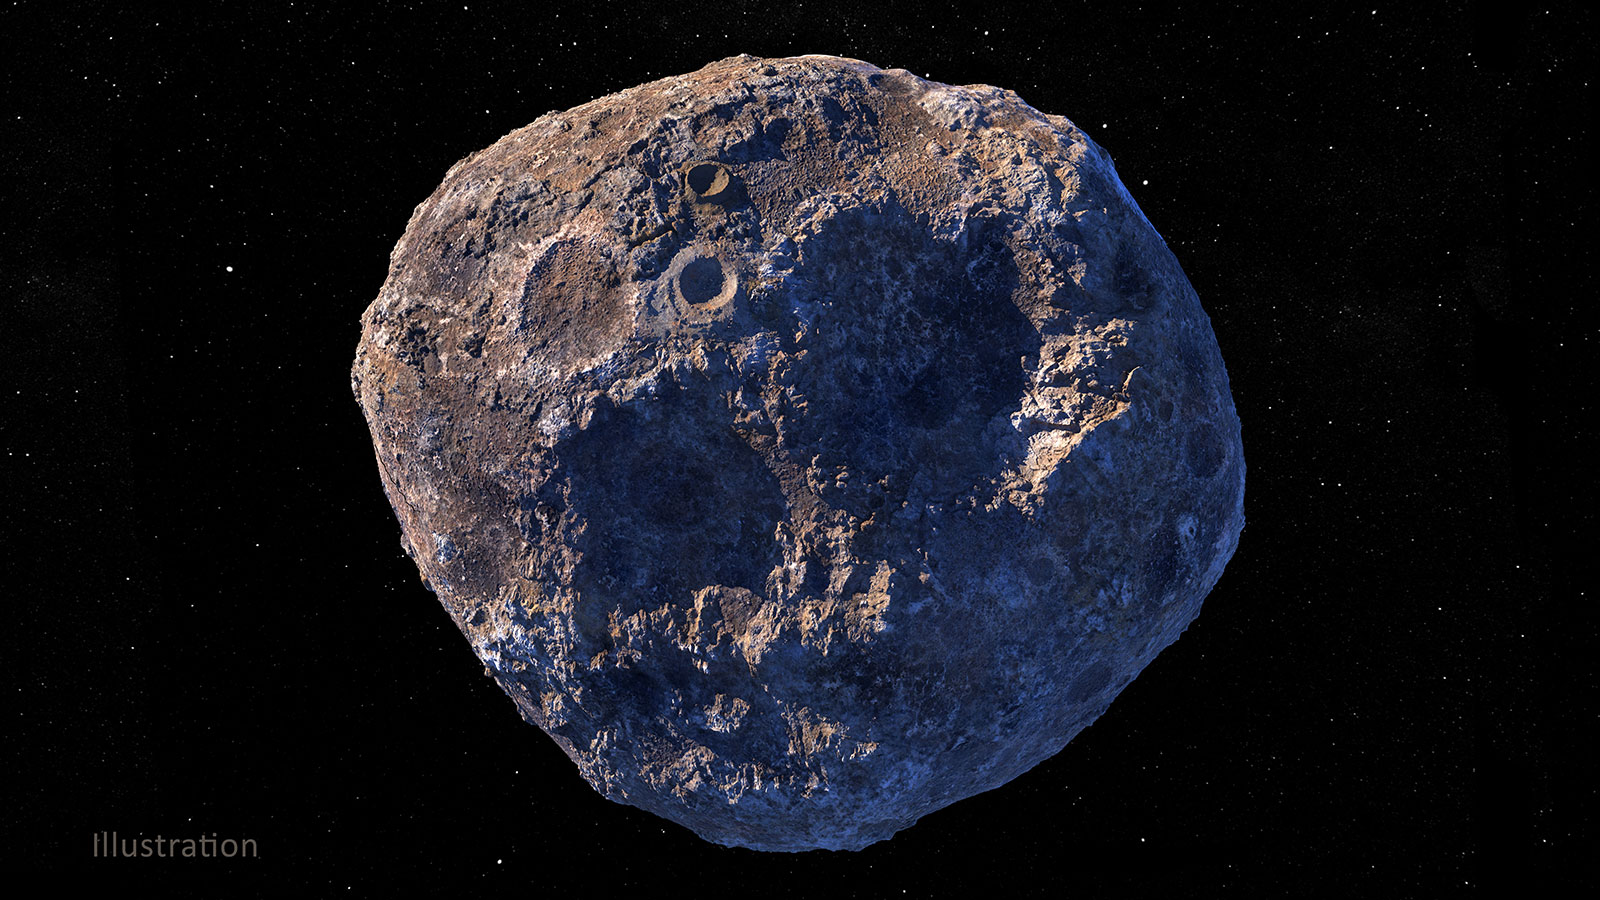 AstroForge, la start-up que busca extraer minerales valiosos de asteroides